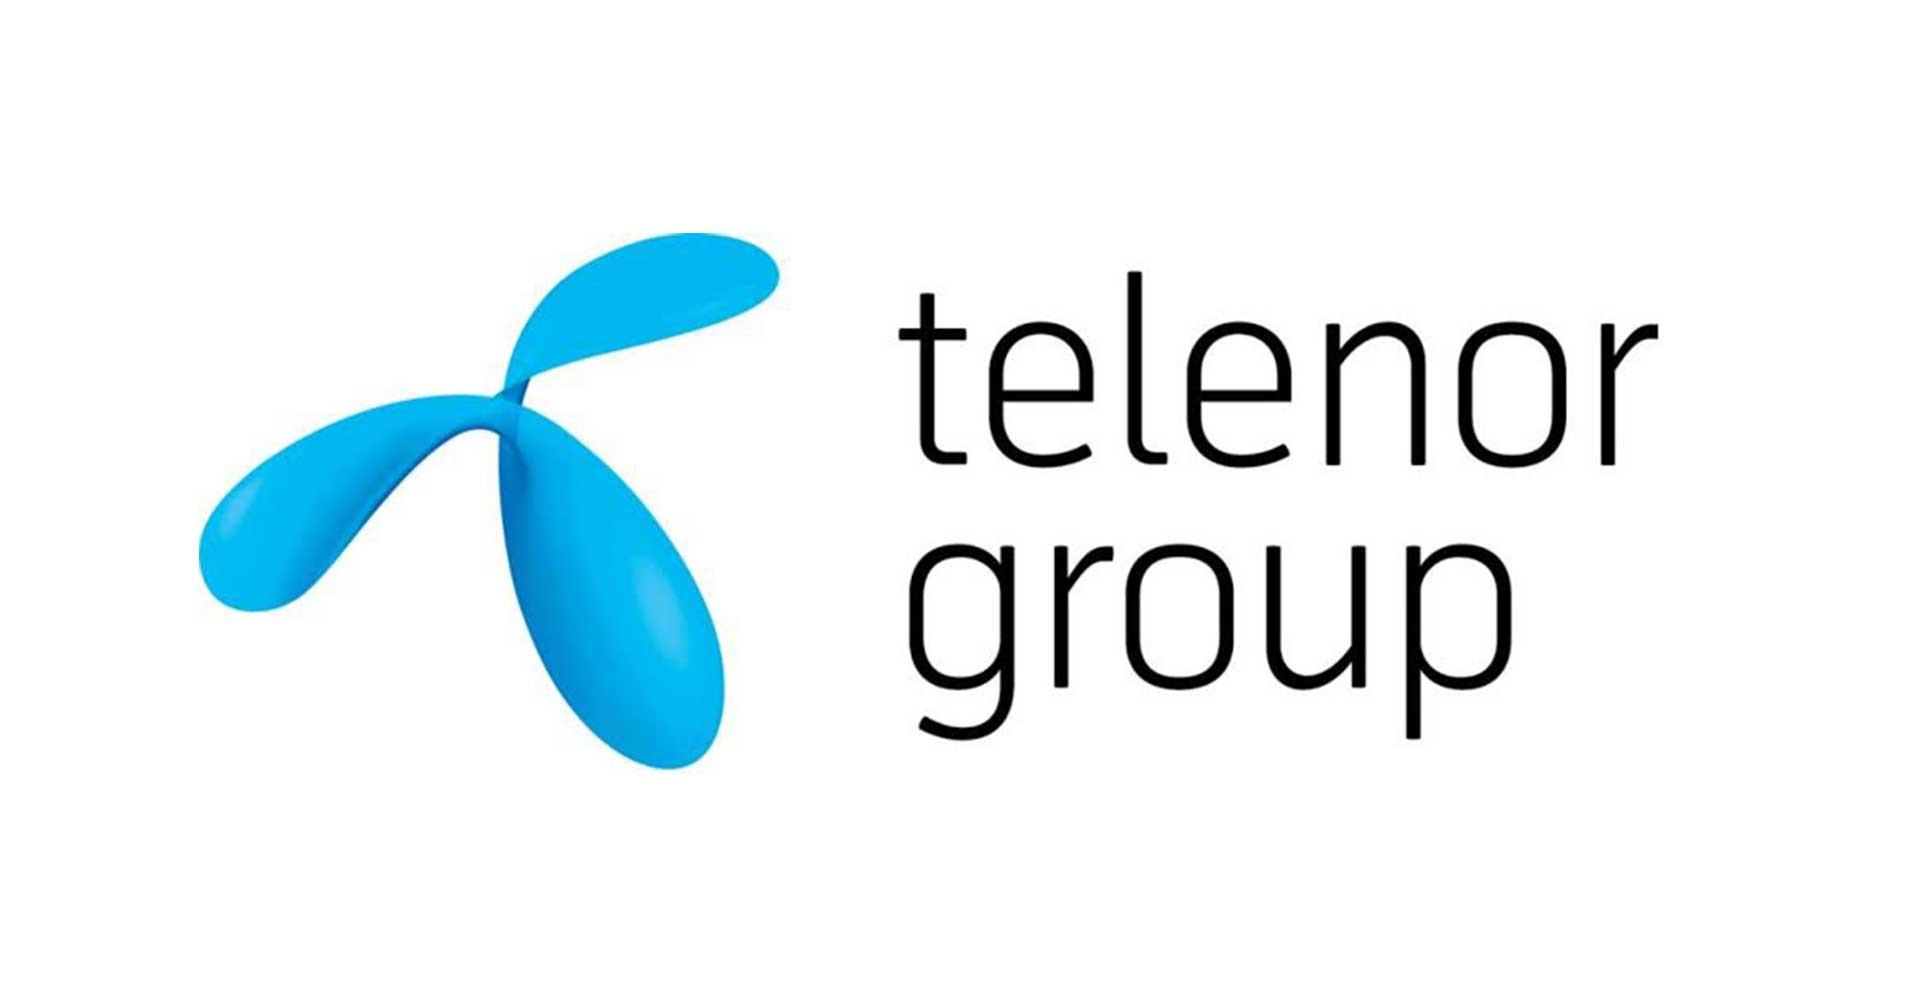 Telenor เรียกร้องความชัดเจนจากเงื่อนไขการรวมเครือข่ายระหว่าง True กับ DTAC